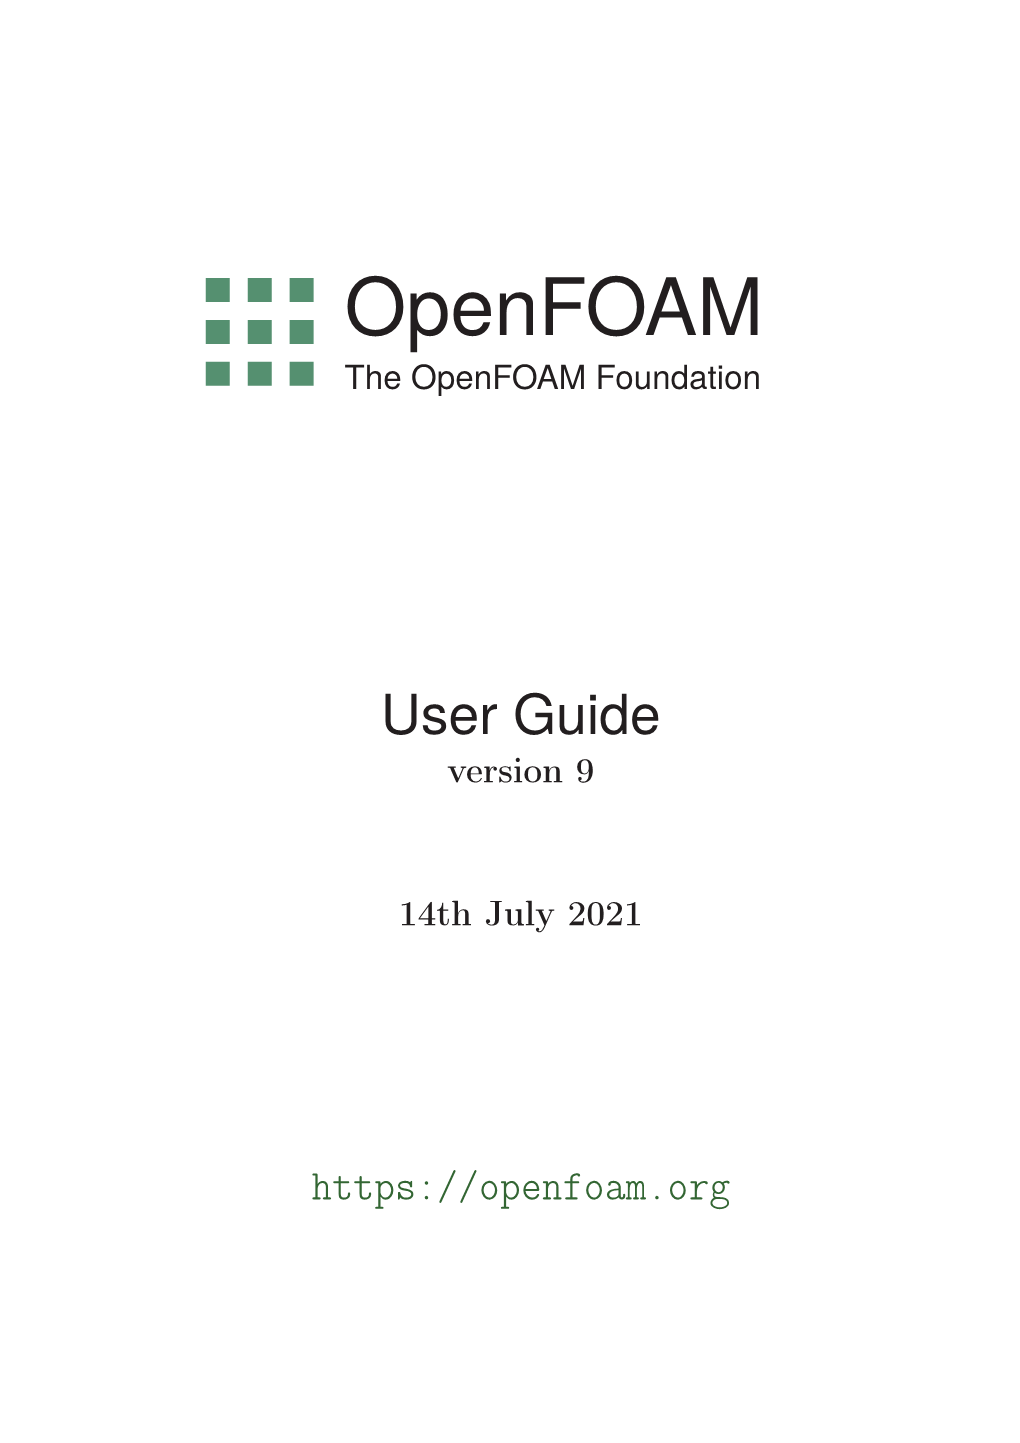 Openfoam User Guide, Version 9